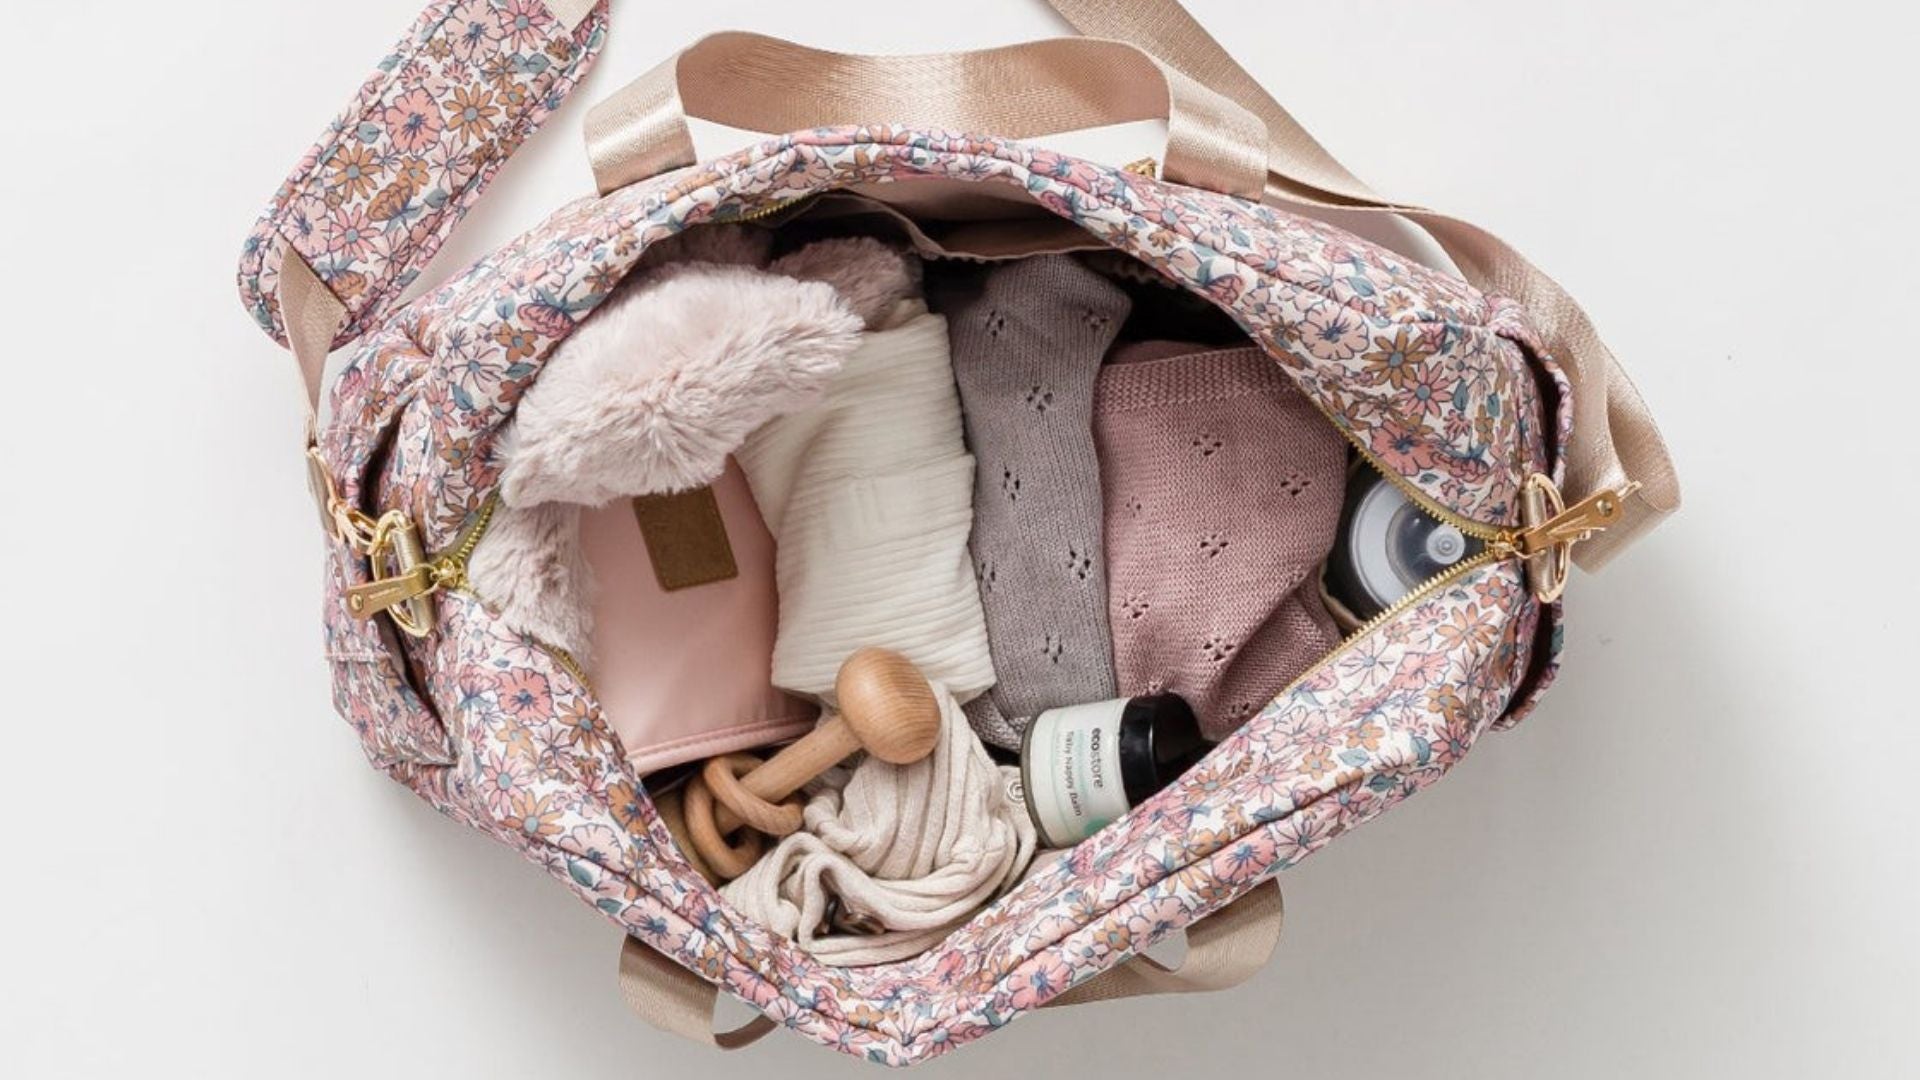 Baby shower gift ideas - diaper bag